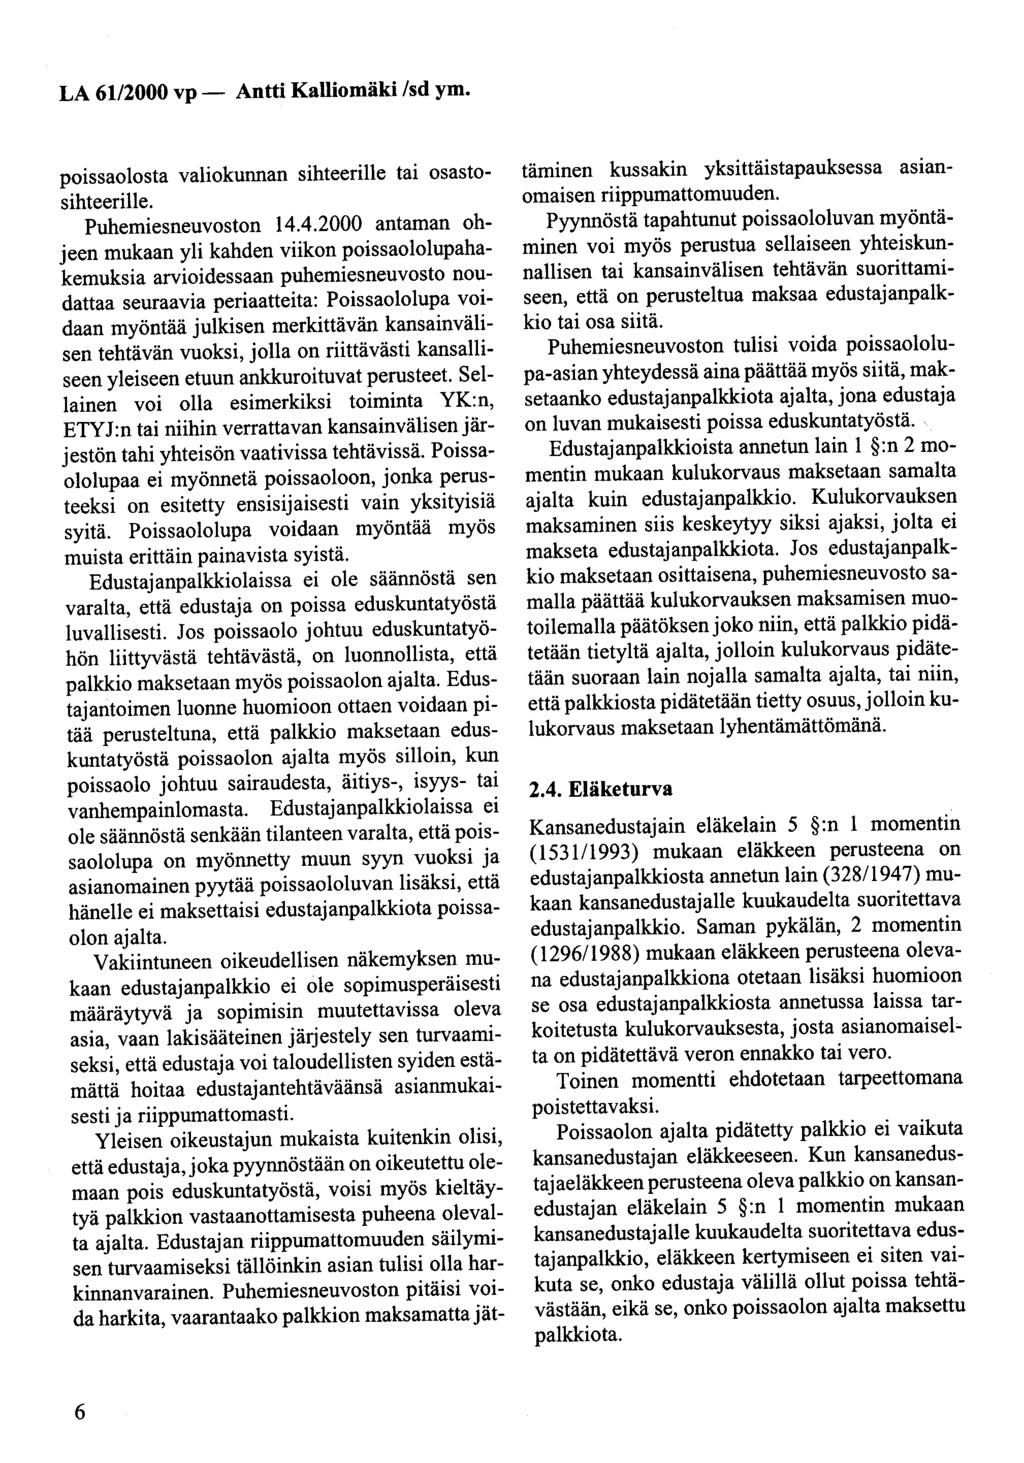 LA 61/2000 vp- Antti Kalliomäki /sd ym. poissaotosta valiokunnan sihteerille tai osastosihteerille. Puhemiesneuvoston 14.